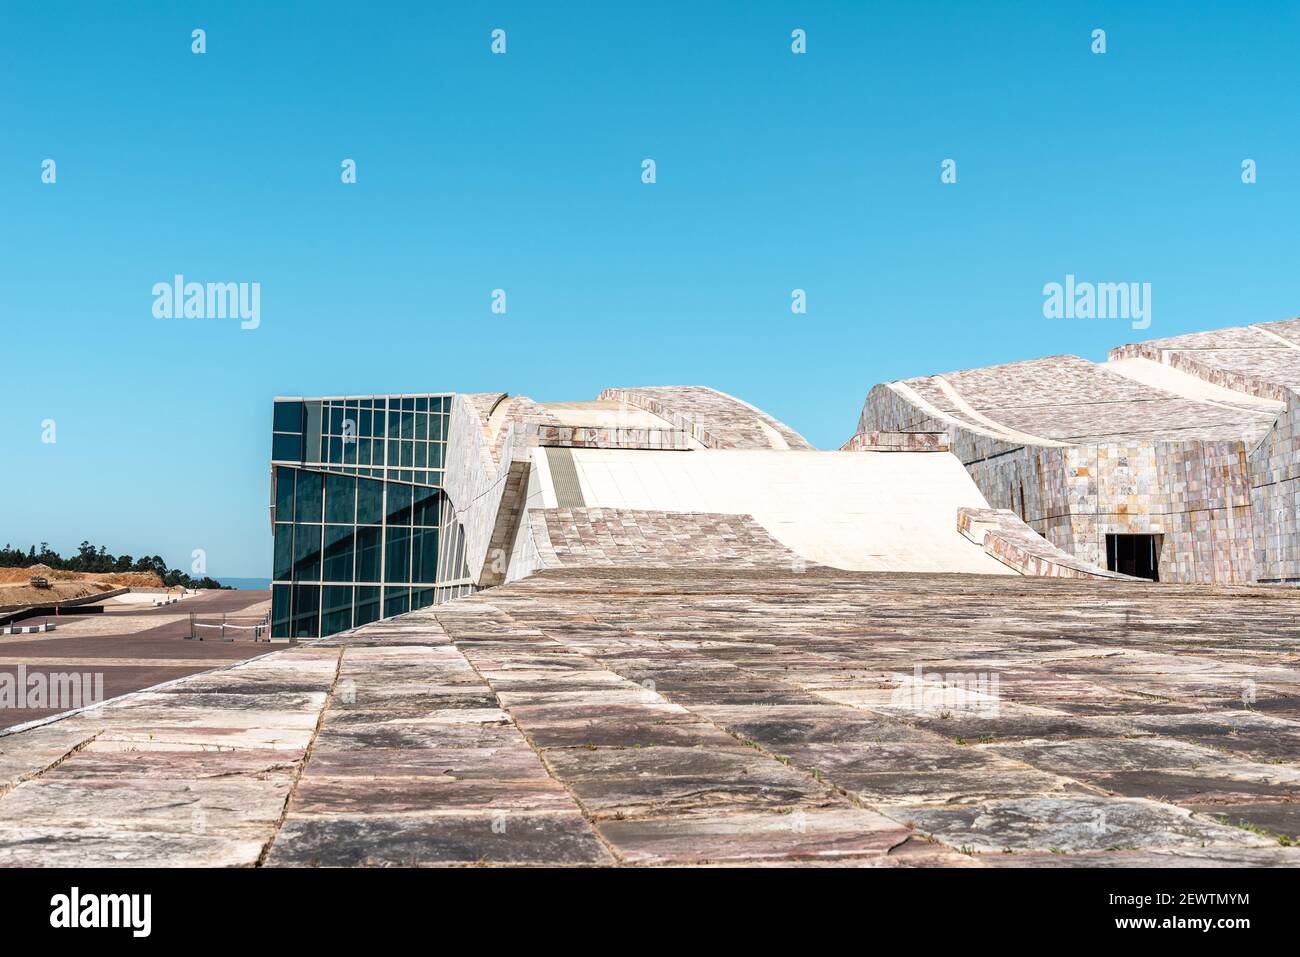 Santiago de Compostela, Spanien - 18. Juli 2020: Blick auf die Stadt der Kultur Galiciens. Gelegen auf dem Gipfel des Berges Gaias als architektonischer Meilenstein. De Stockfoto